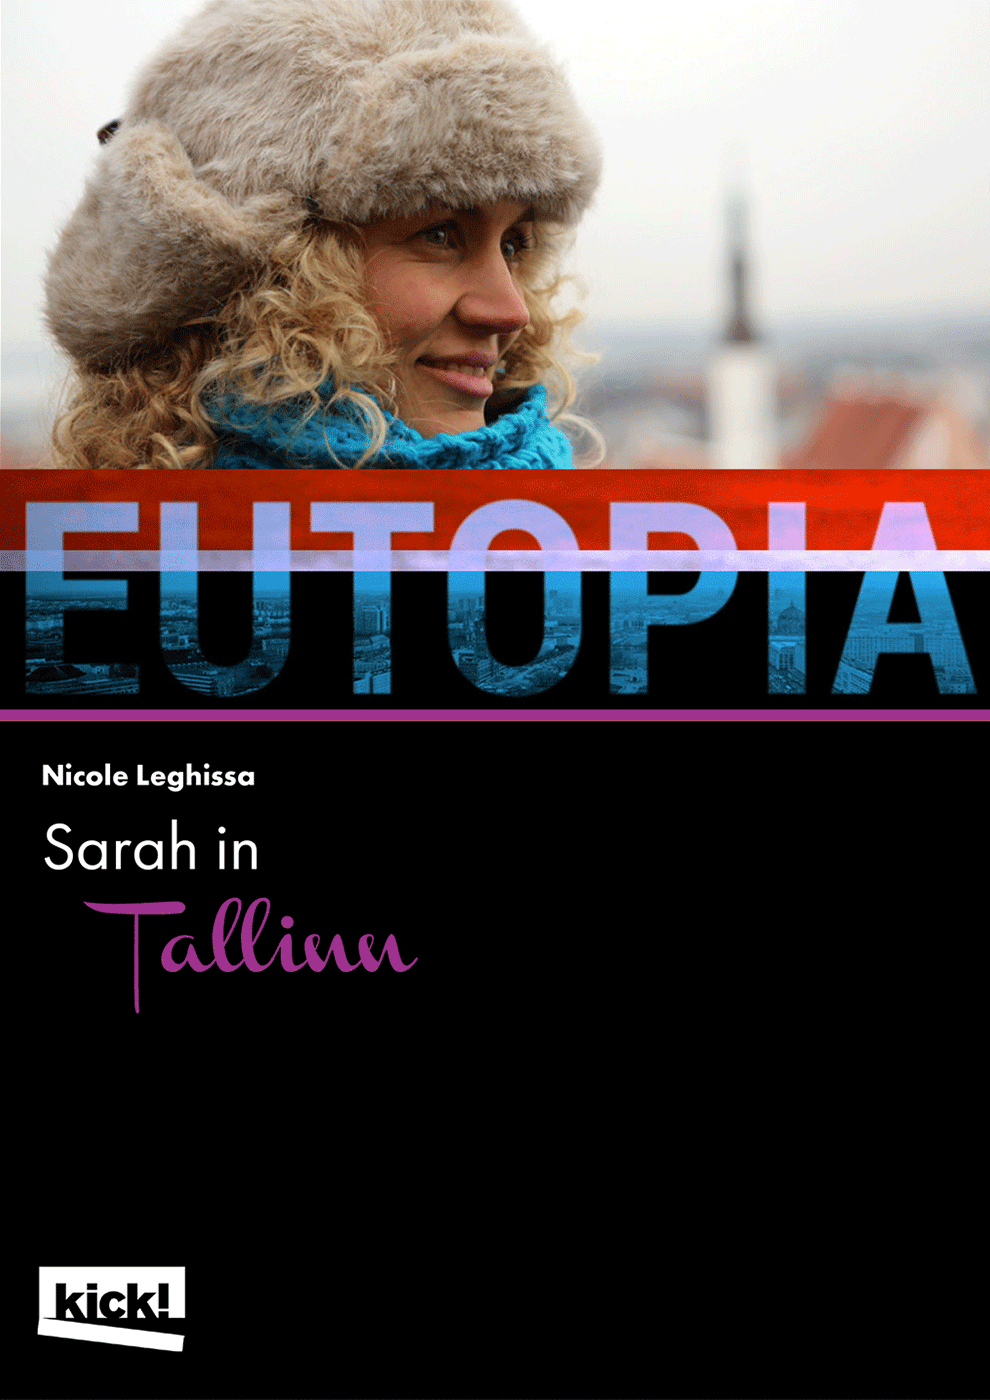 EUTOPIA - Sarah in Tallinn Ein Film von Nicole Leghissa